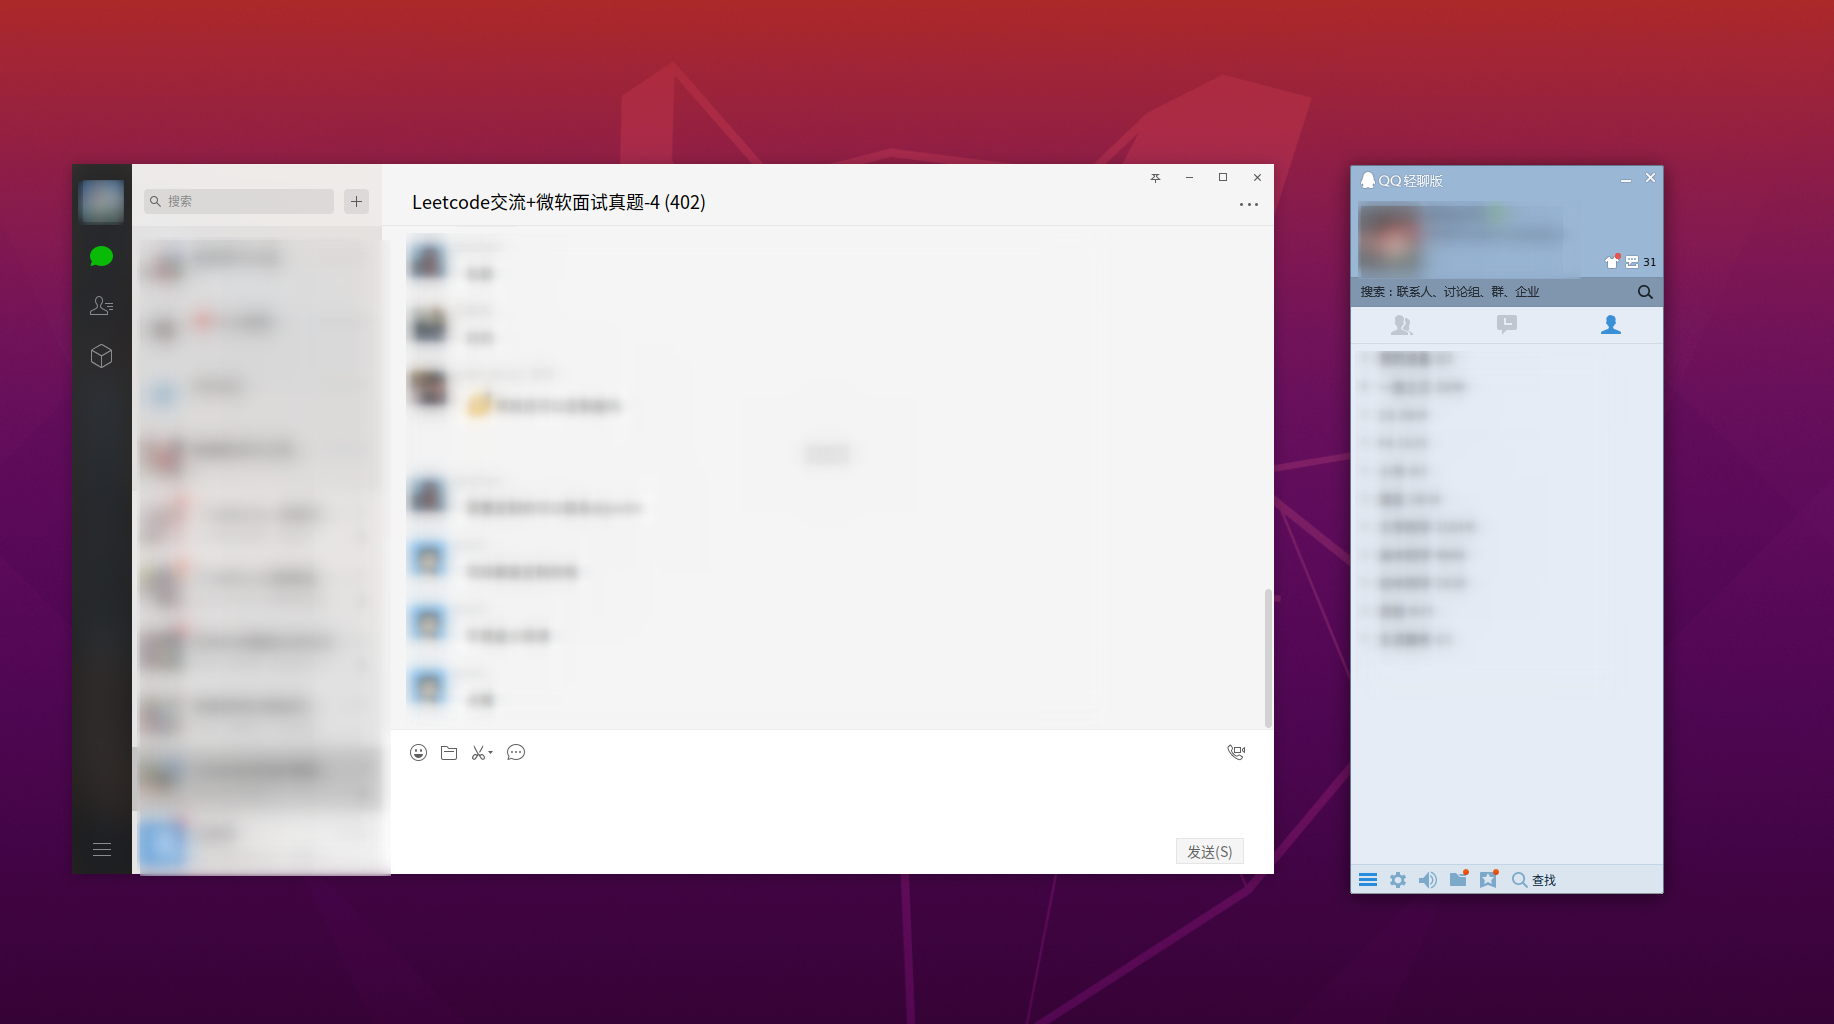 [2020.11.4亲测有效] 手把手教你在Ubuntu 20.04上通过docker安装微信和QQ - 最简单有效的方法「建议收藏」